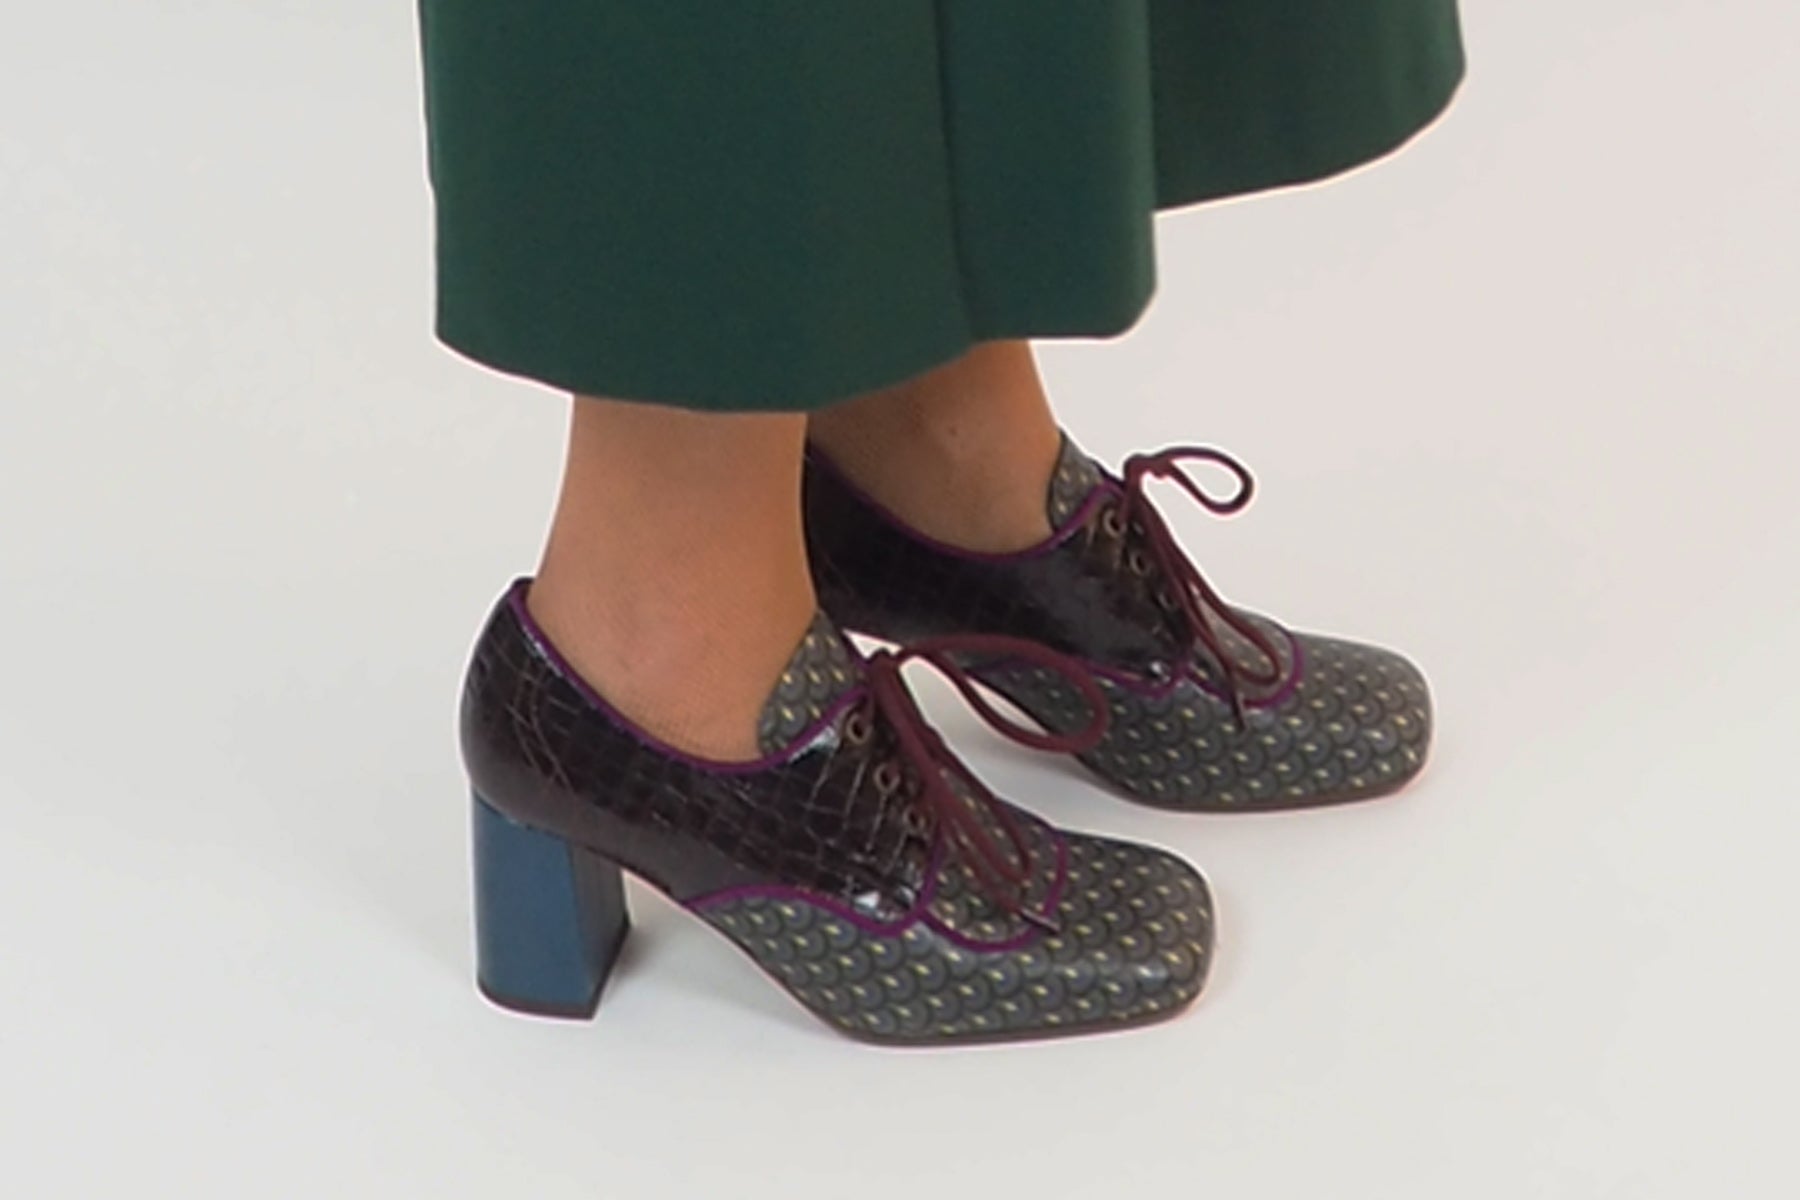 Moderner Damen Schnürschuh aus bedrucktem Leder in Multicolor - Absatz 7cm - Petora Damen Loafers & Schnürer Chie Mihara 